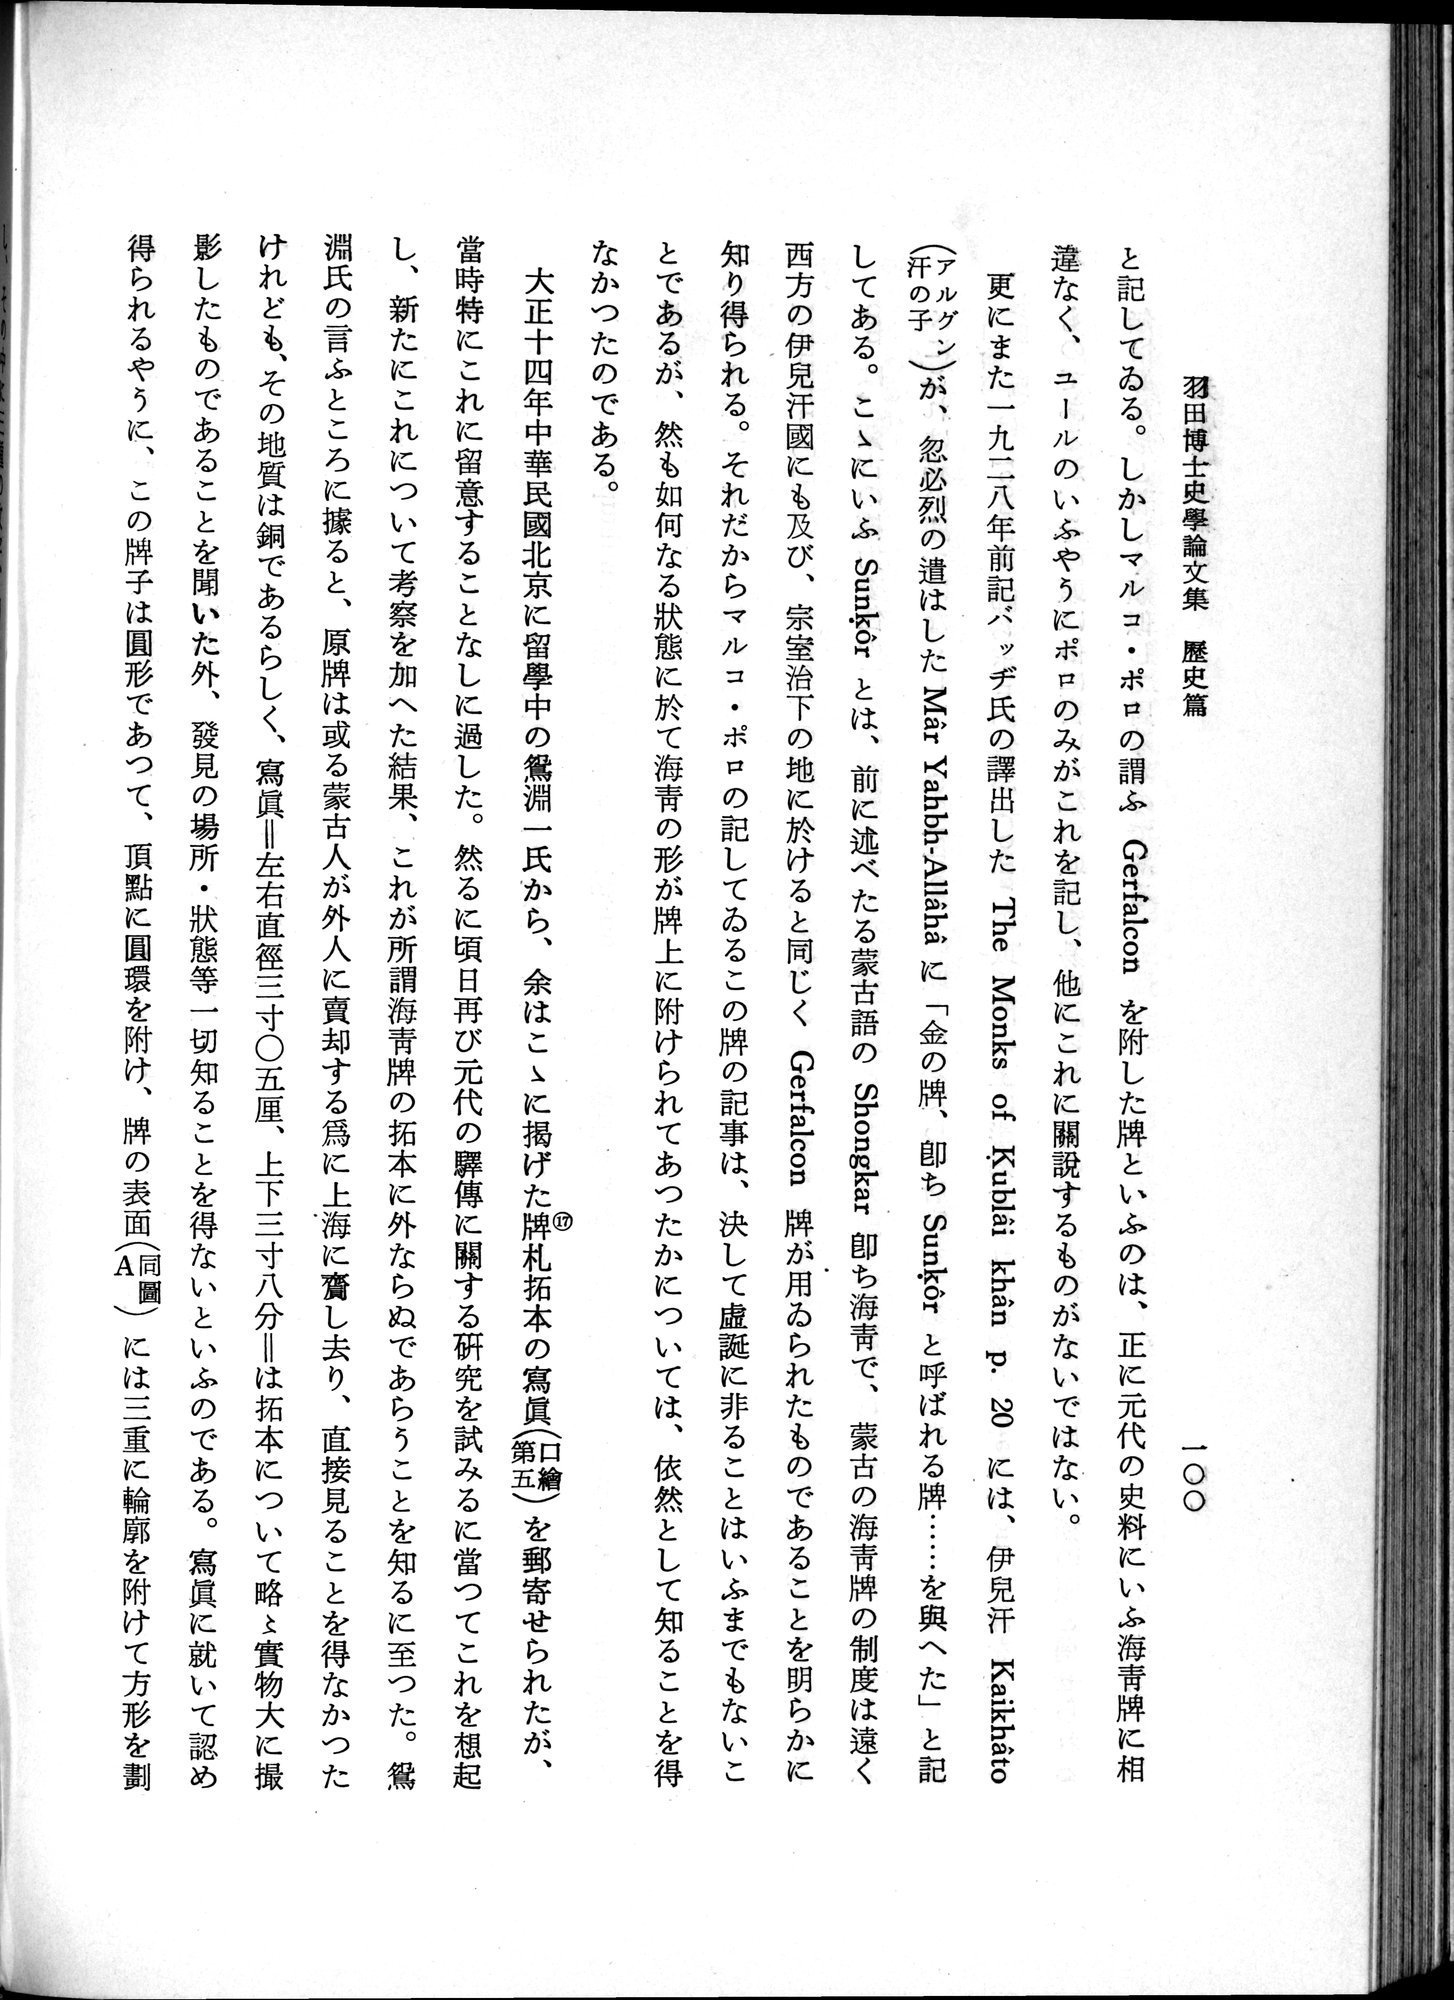 羽田博士史学論文集 : vol.1 / Page 138 (Grayscale High Resolution Image)